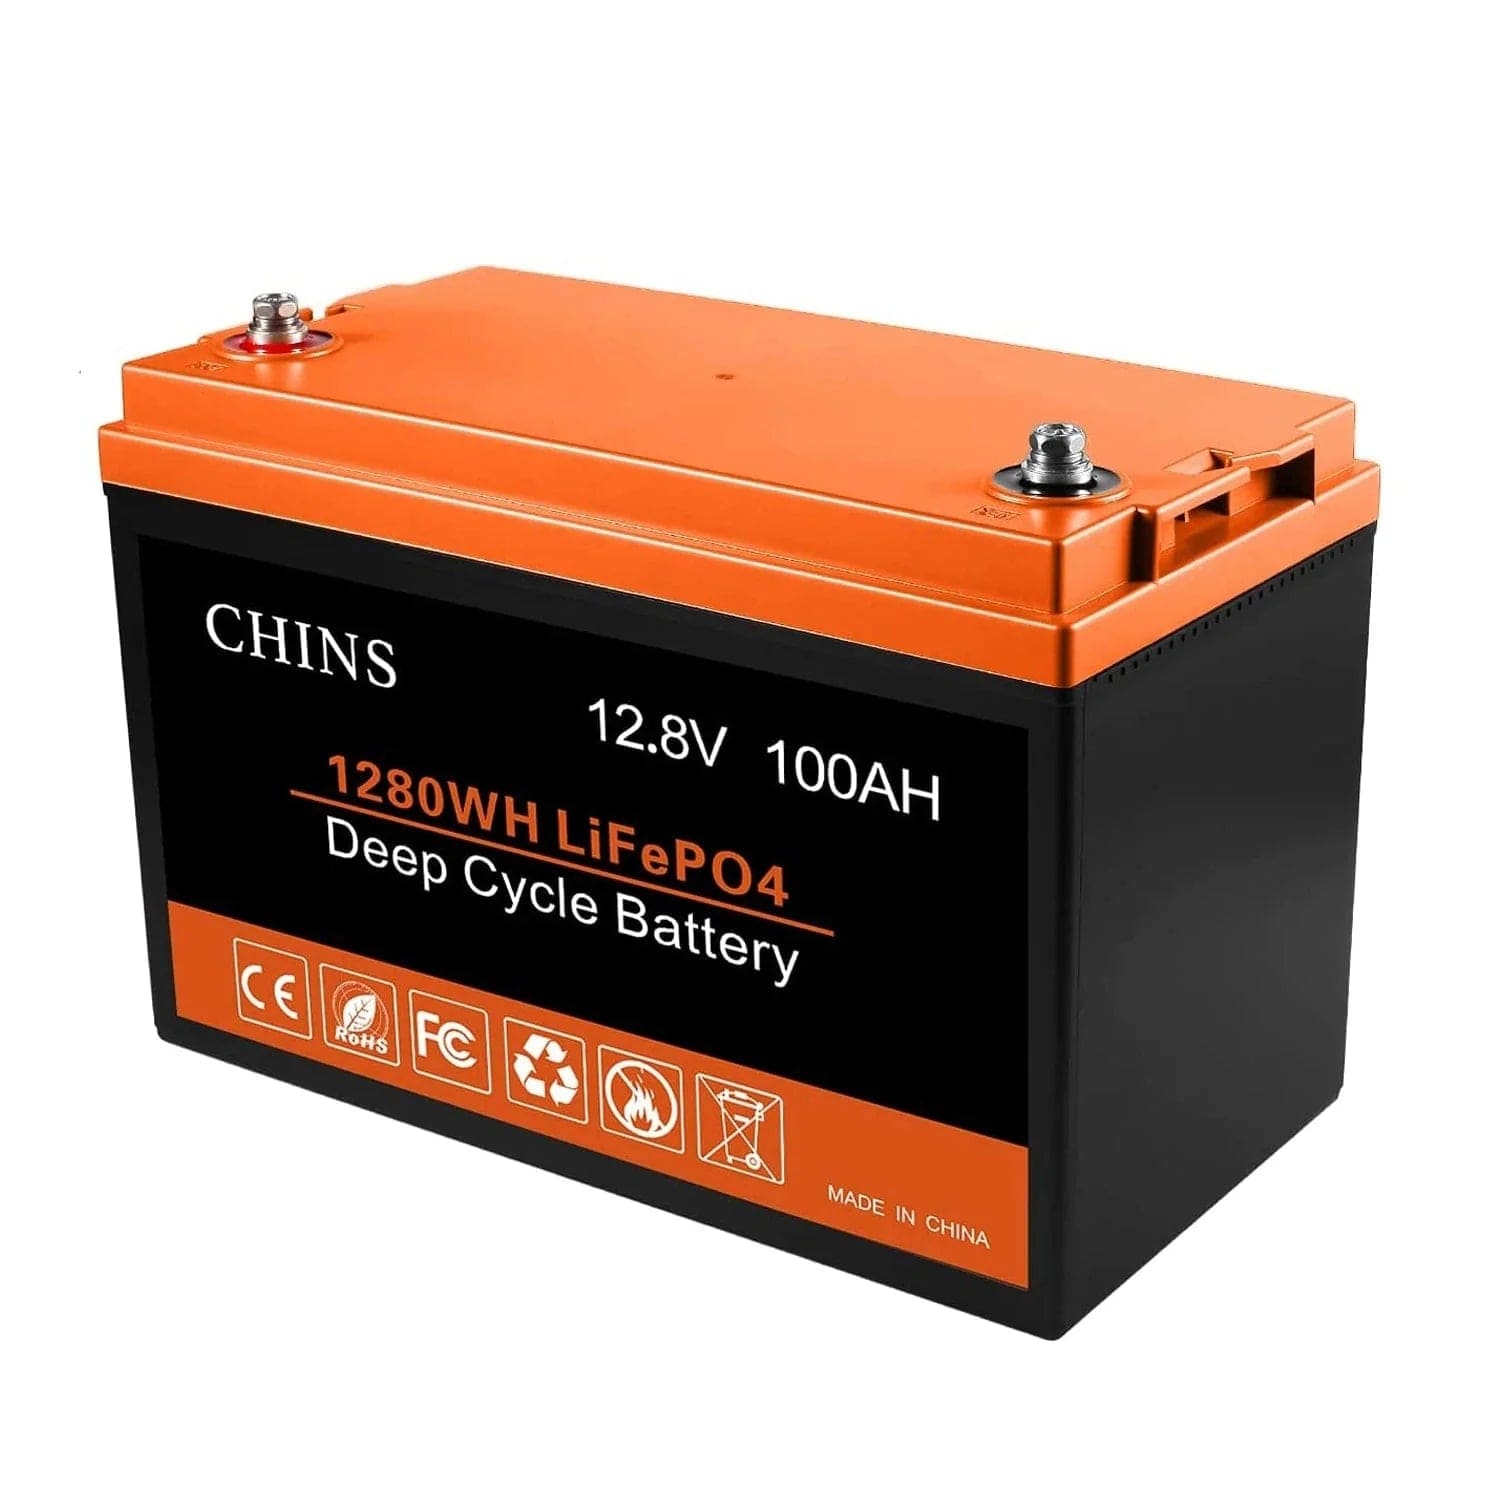 Chins 12.8V/100Ah LiFePO4 Deep Cycle Battery Chins Chins Deep Cycle Batteries